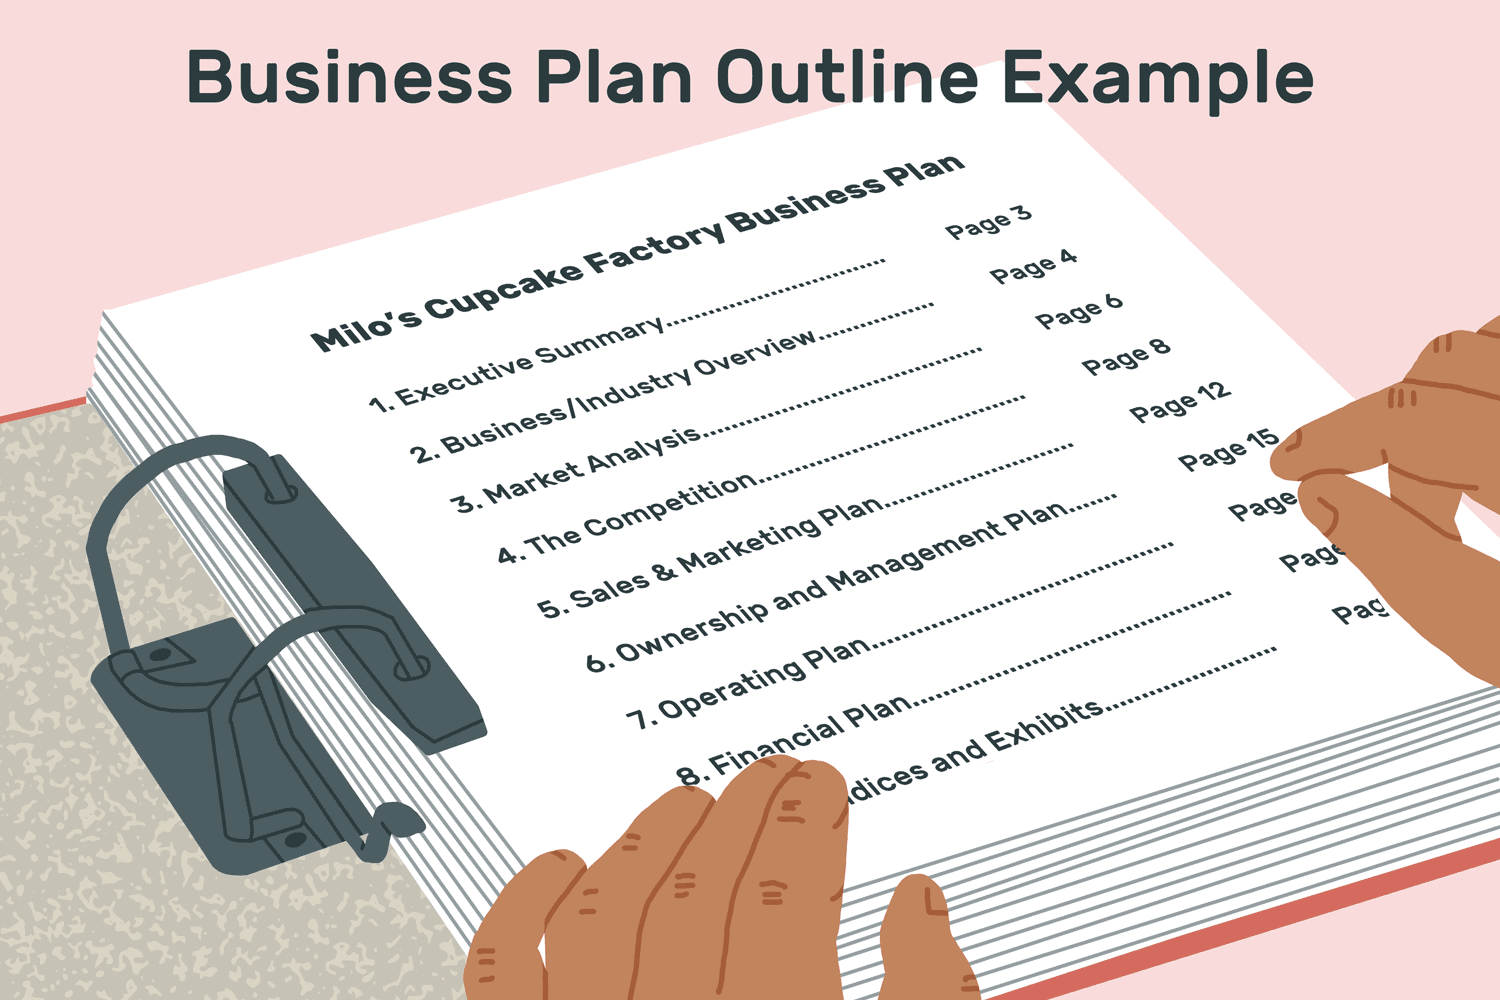 商业计划大纲示例:milo's cupcake factor商业计划。打开图书索引页，包括:执行摘要、业务/行业概述、市场分析、竞争、销售和营销计划、所有权和管理计划。经营计划、财务计划(未知)及展品。